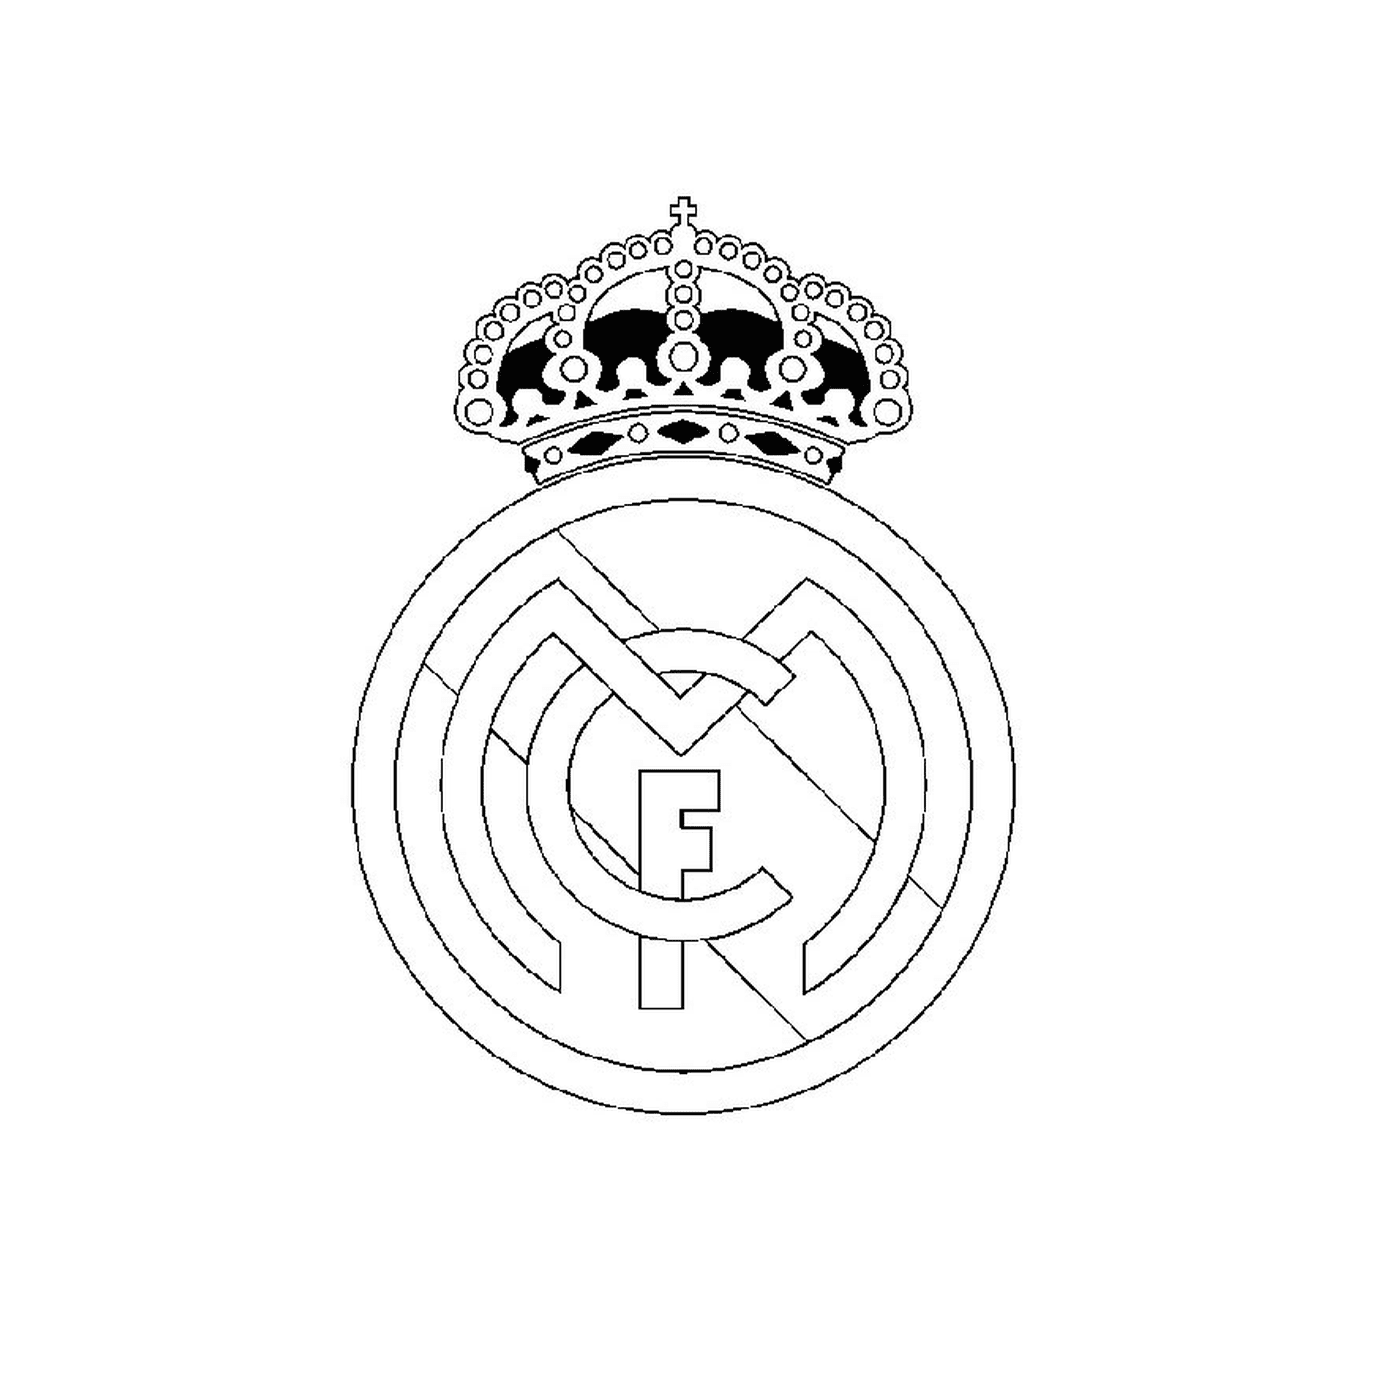  真正的马德里标志 